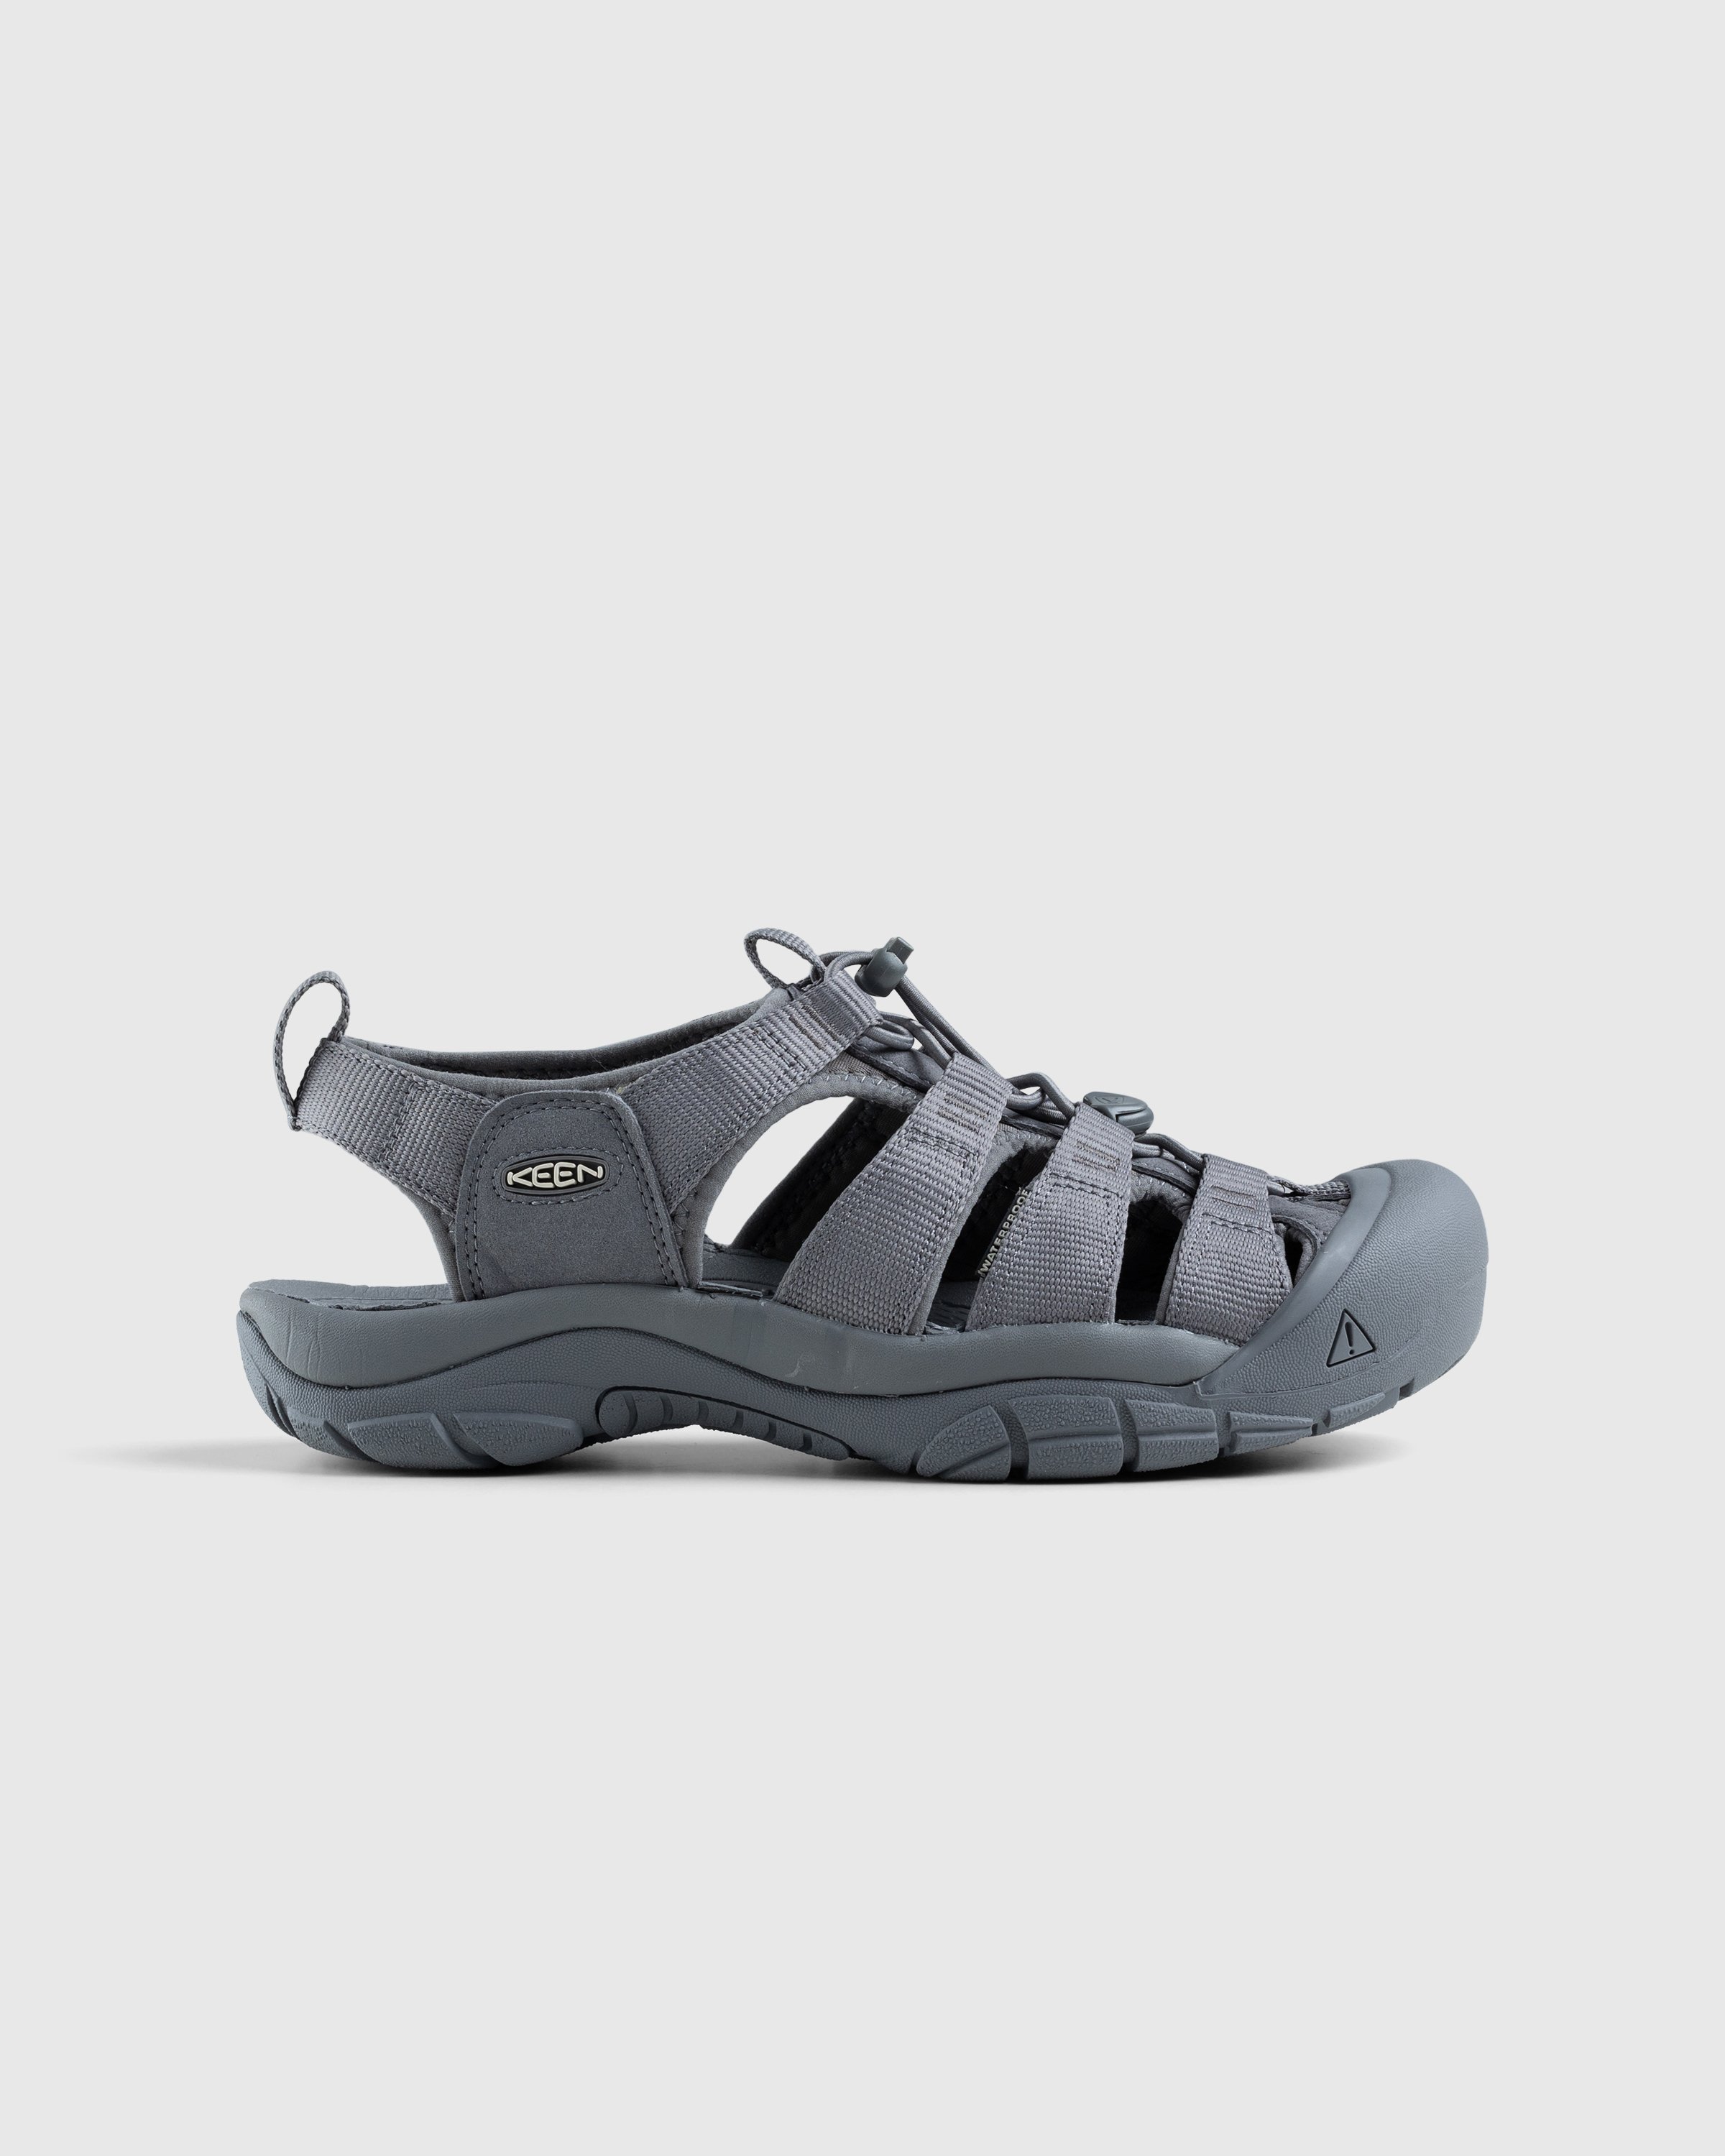 Keen - Newport H2 Monochrome/Steel Grey - Footwear - Grey - Image 1